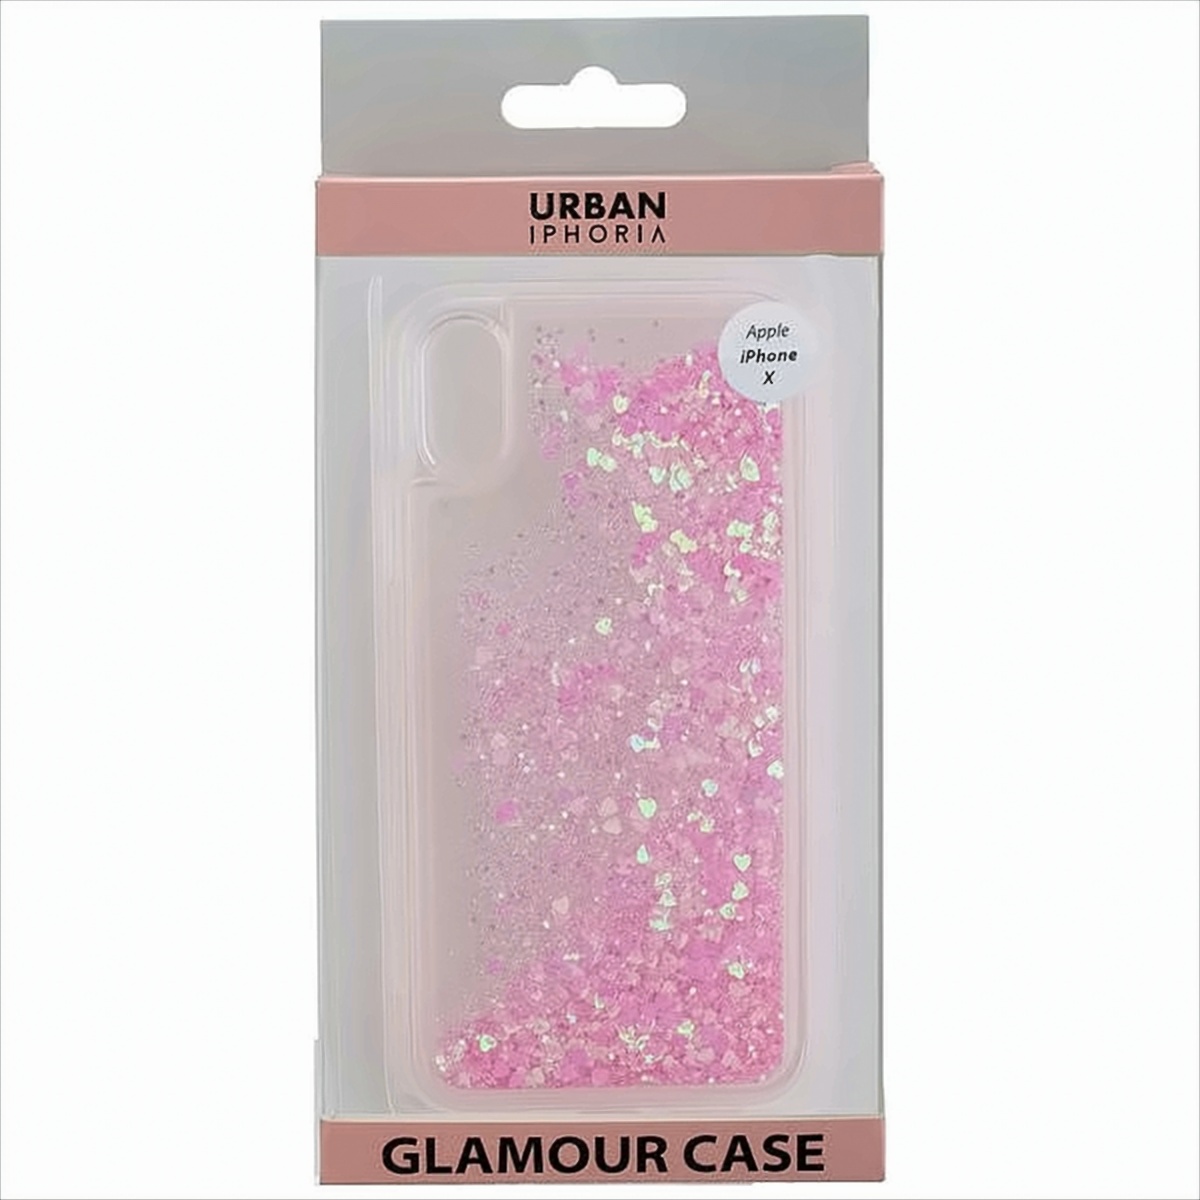 URBAN STYLE Back Cover GLAMOUR kompatibel zu Apple iPhone X - Pink von Peter Jäckel GmbH